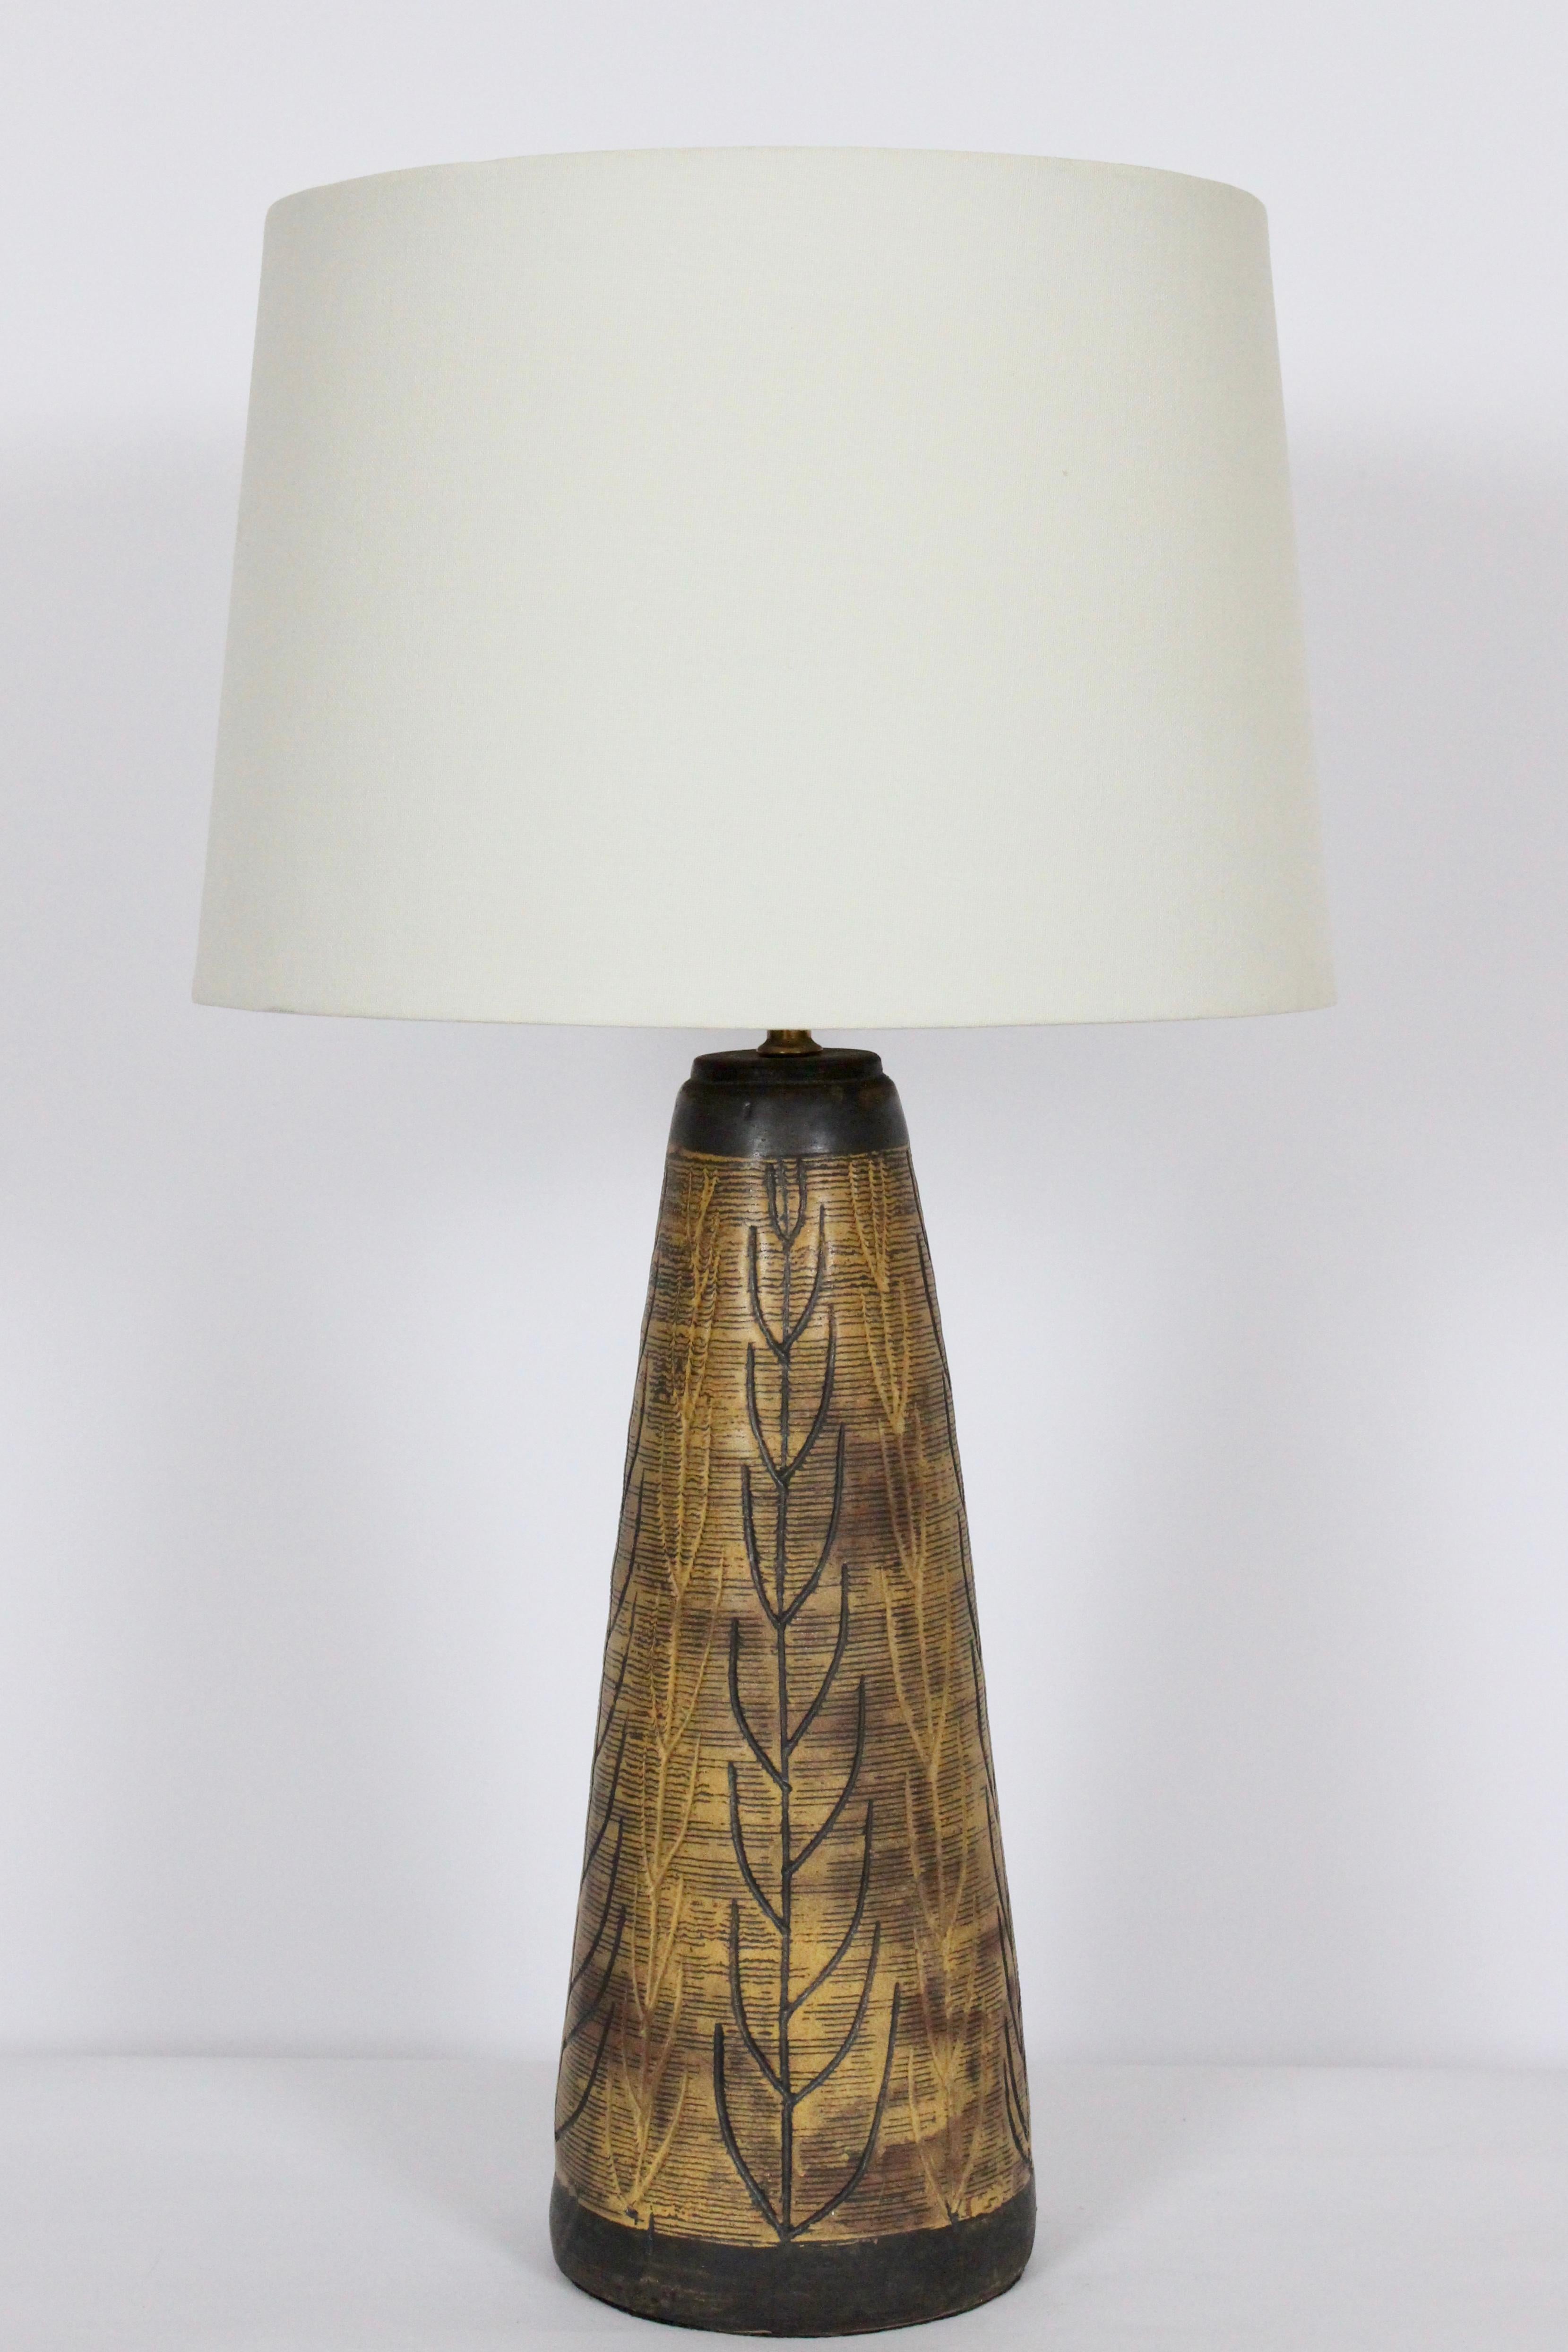 Grande lampe en grès organique moderne sculptée à la main par Nancy Wickham Boyd, potière du Vermont, pour Design/One. Forme cylindrique effilée en céramique émaillée, réalisée à la main, avec des motifs de feuilles et de branches dans des tons